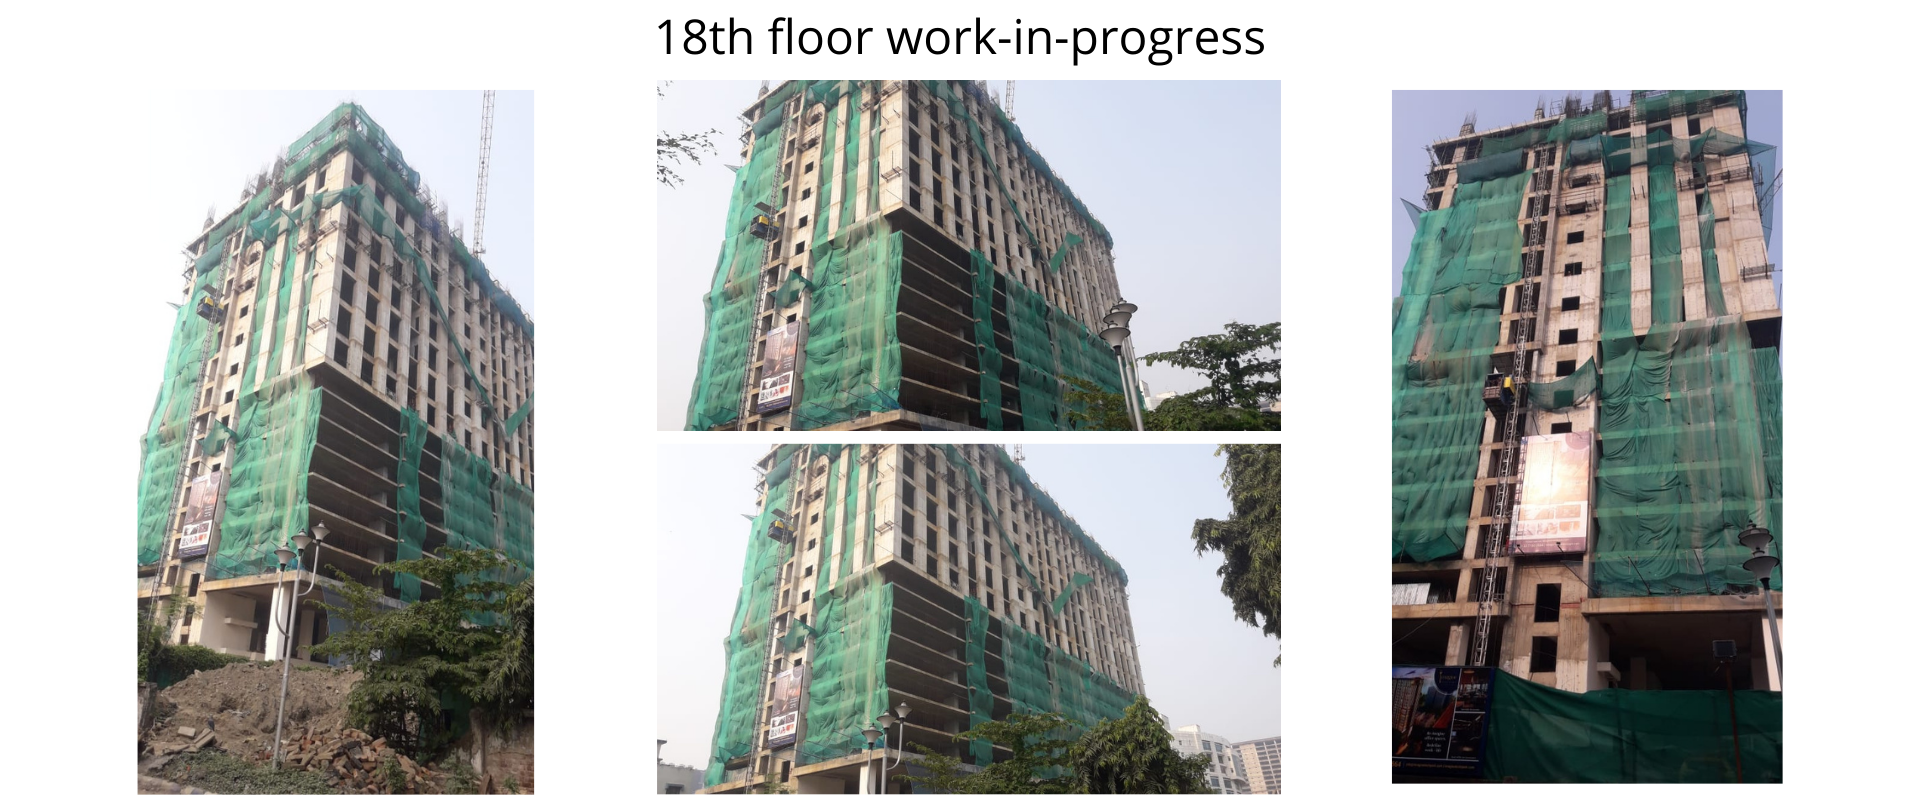 18th floor - work-in-progress